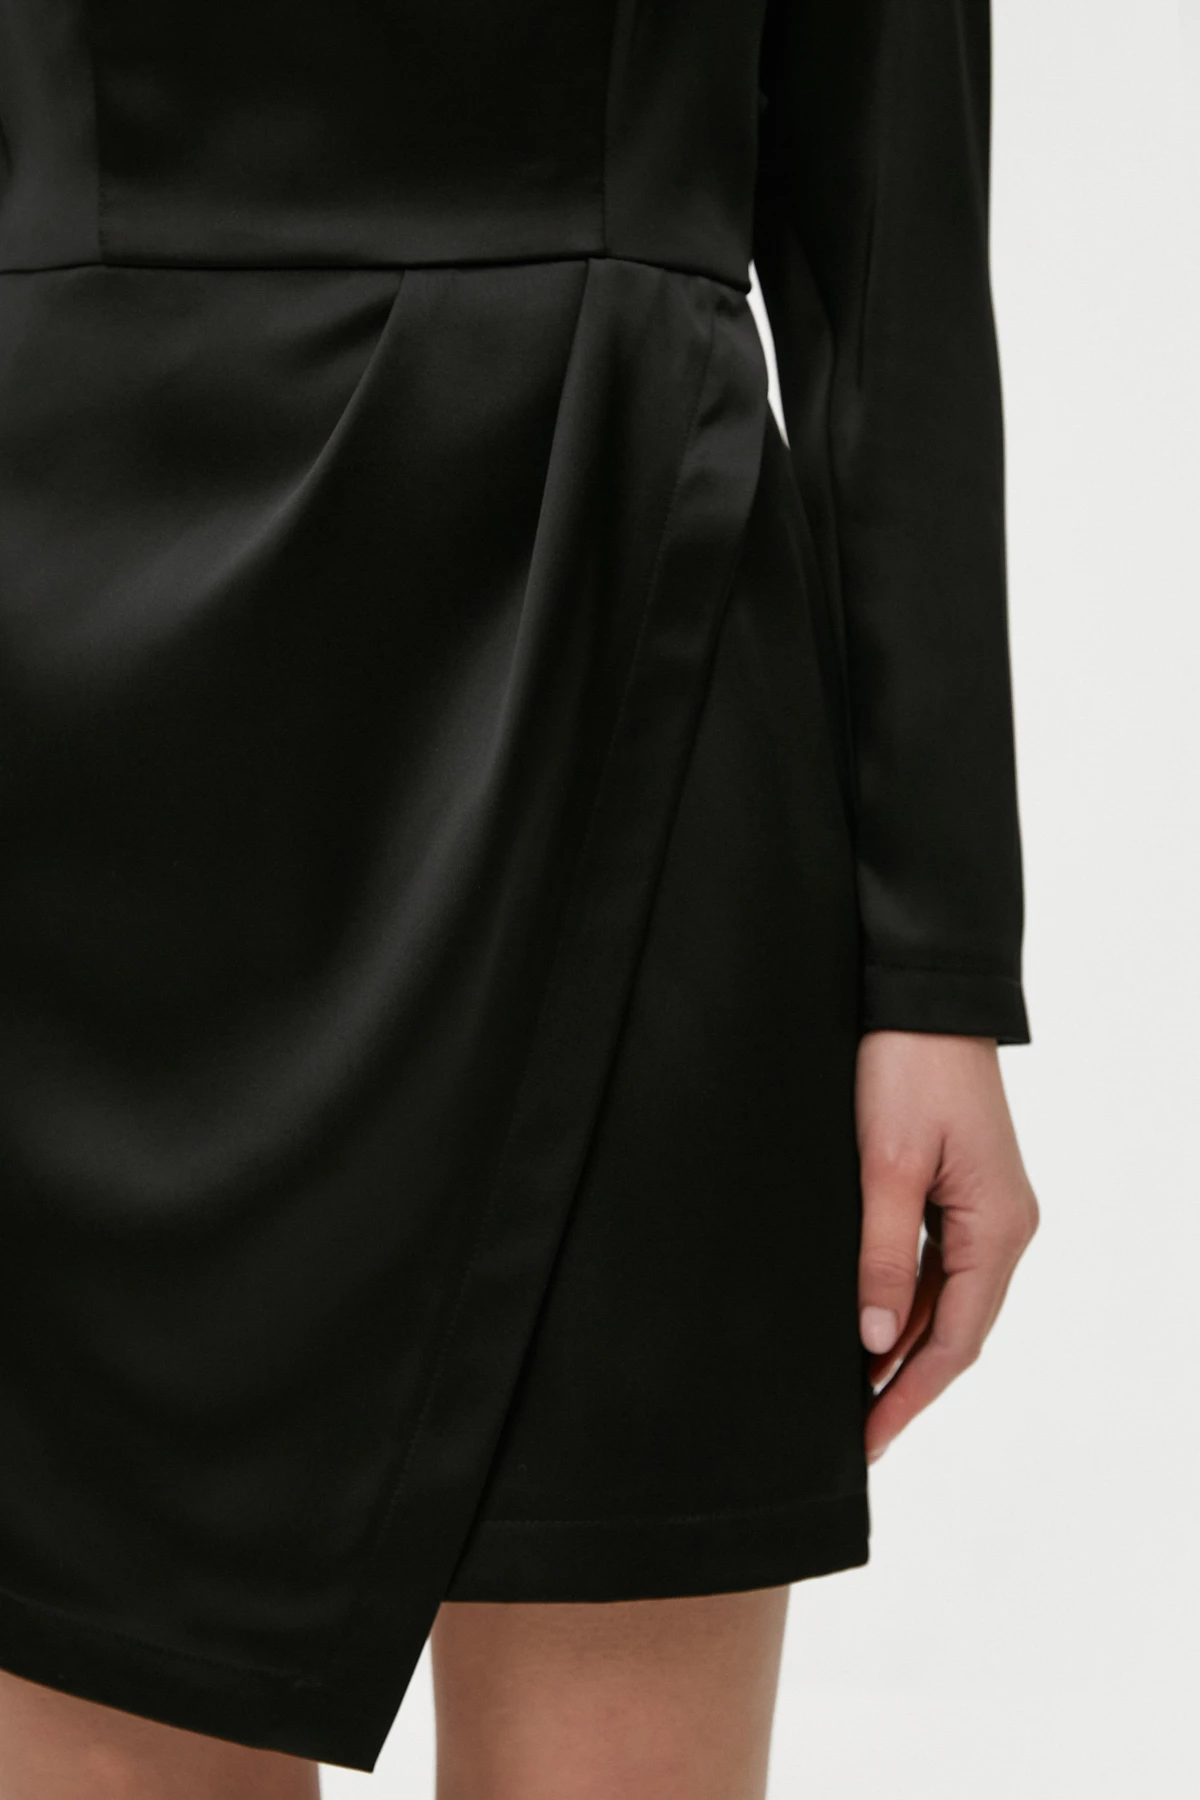 Black draped satin dress, photo 4